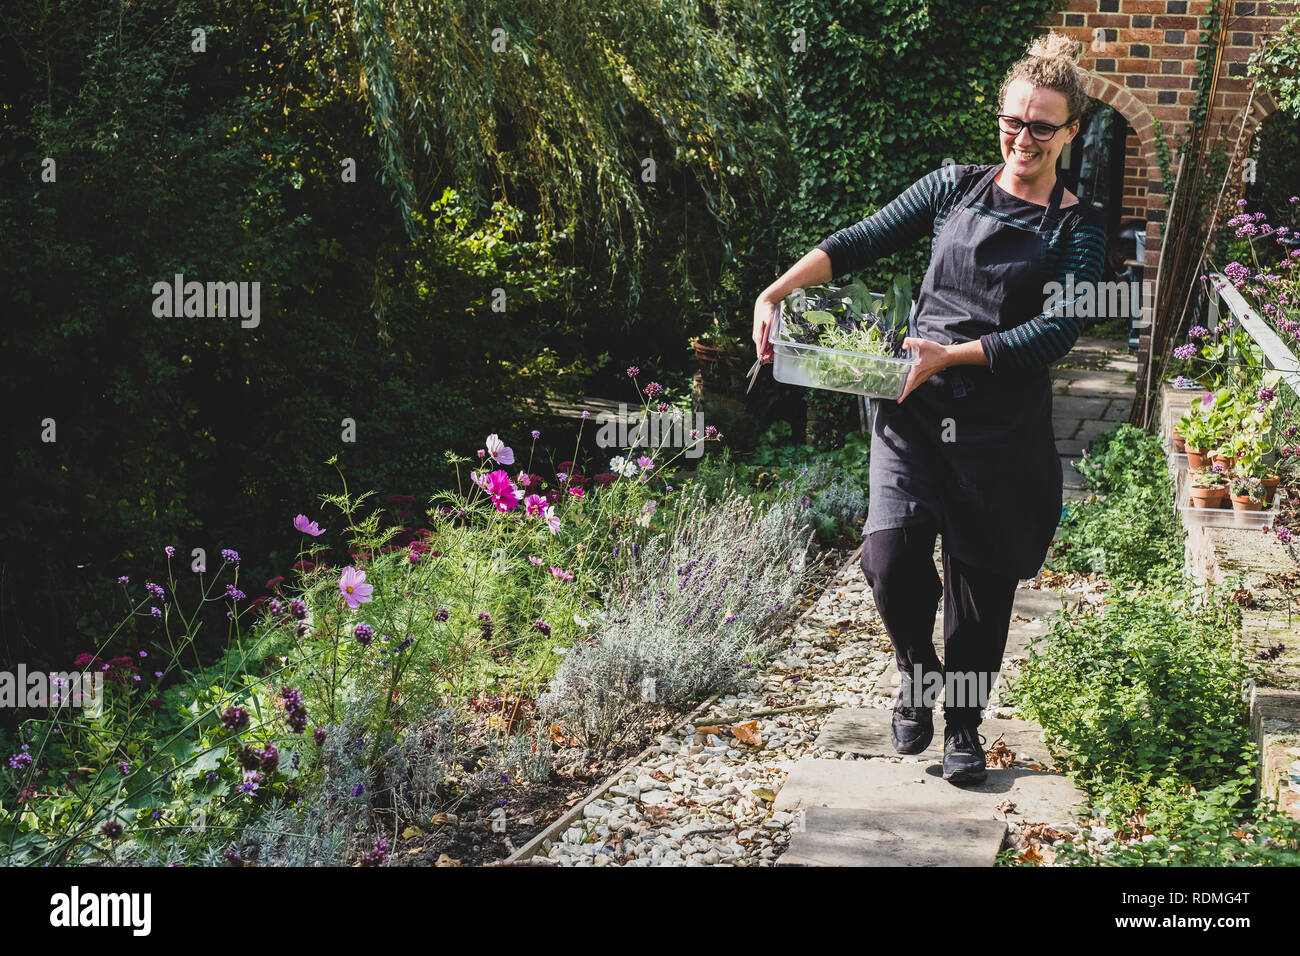 Sorridente donna bionda con gli occhiali e grembiule camminando lungo il percorso del giardino, portando il vassoio con le erbe fresche. Foto Stock